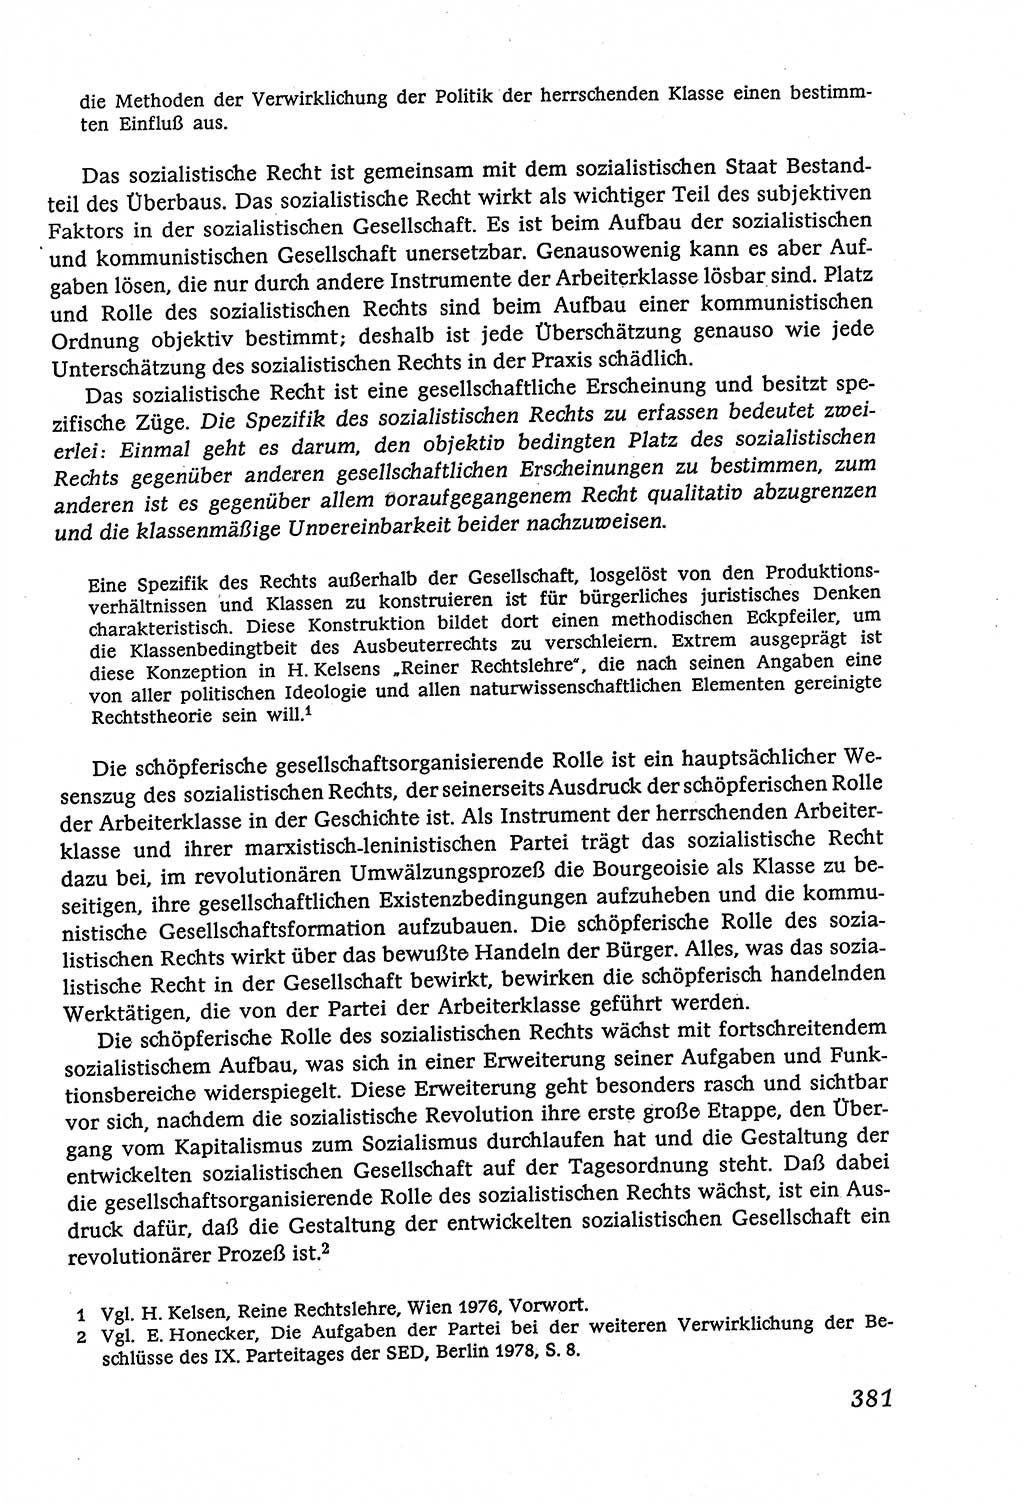 Marxistisch-leninistische (ML) Staats- und Rechtstheorie [Deutsche Demokratische Republik (DDR)], Lehrbuch 1980, Seite 381 (ML St.-R.-Th. DDR Lb. 1980, S. 381)